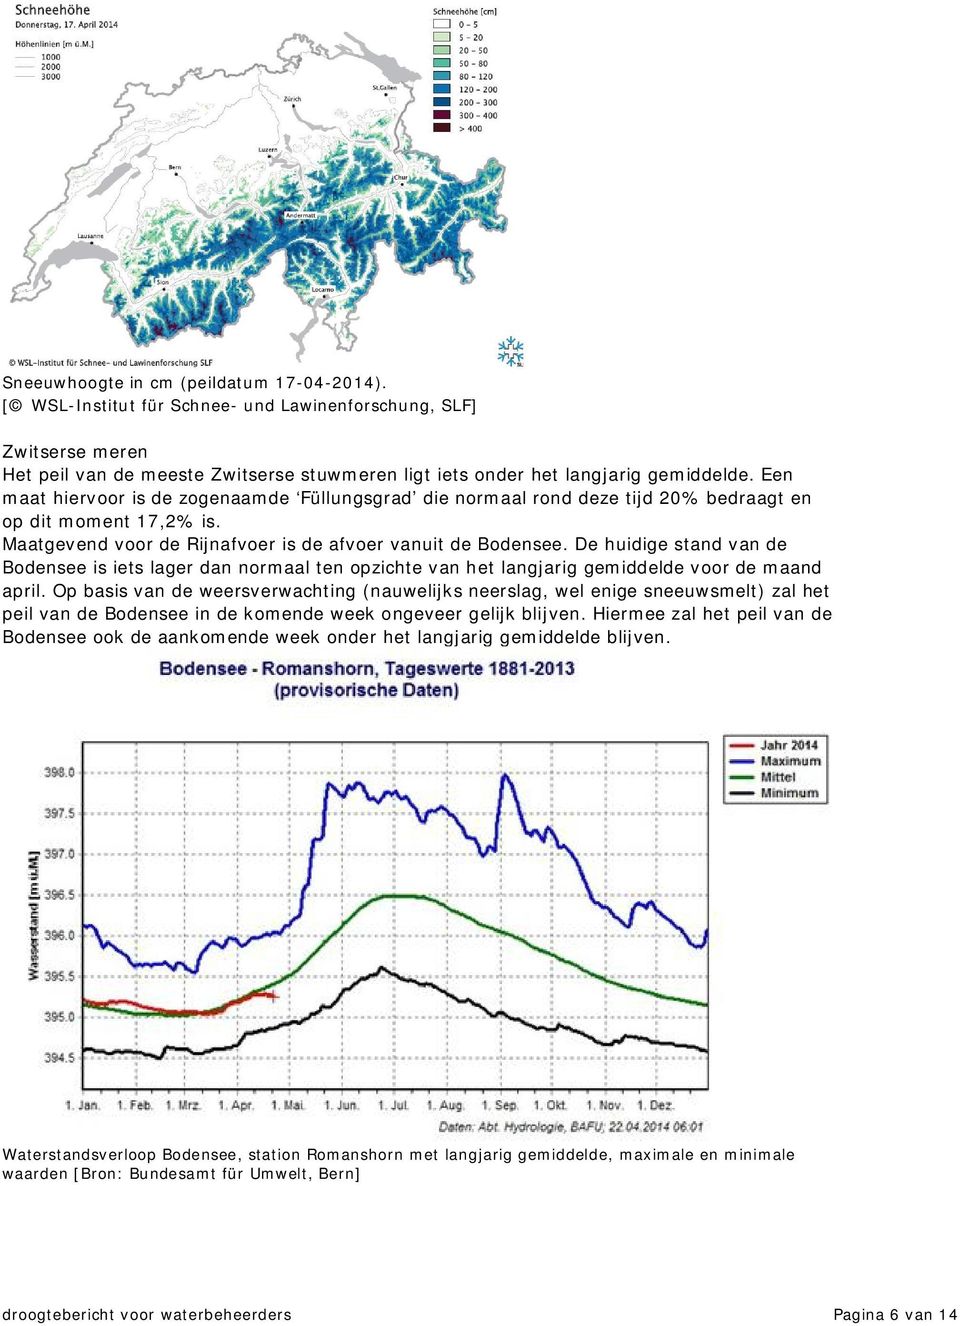 De huidige stand van de Bodensee is iets lager dan normaal ten opzichte van het langjarig gemiddelde voor de maand april.